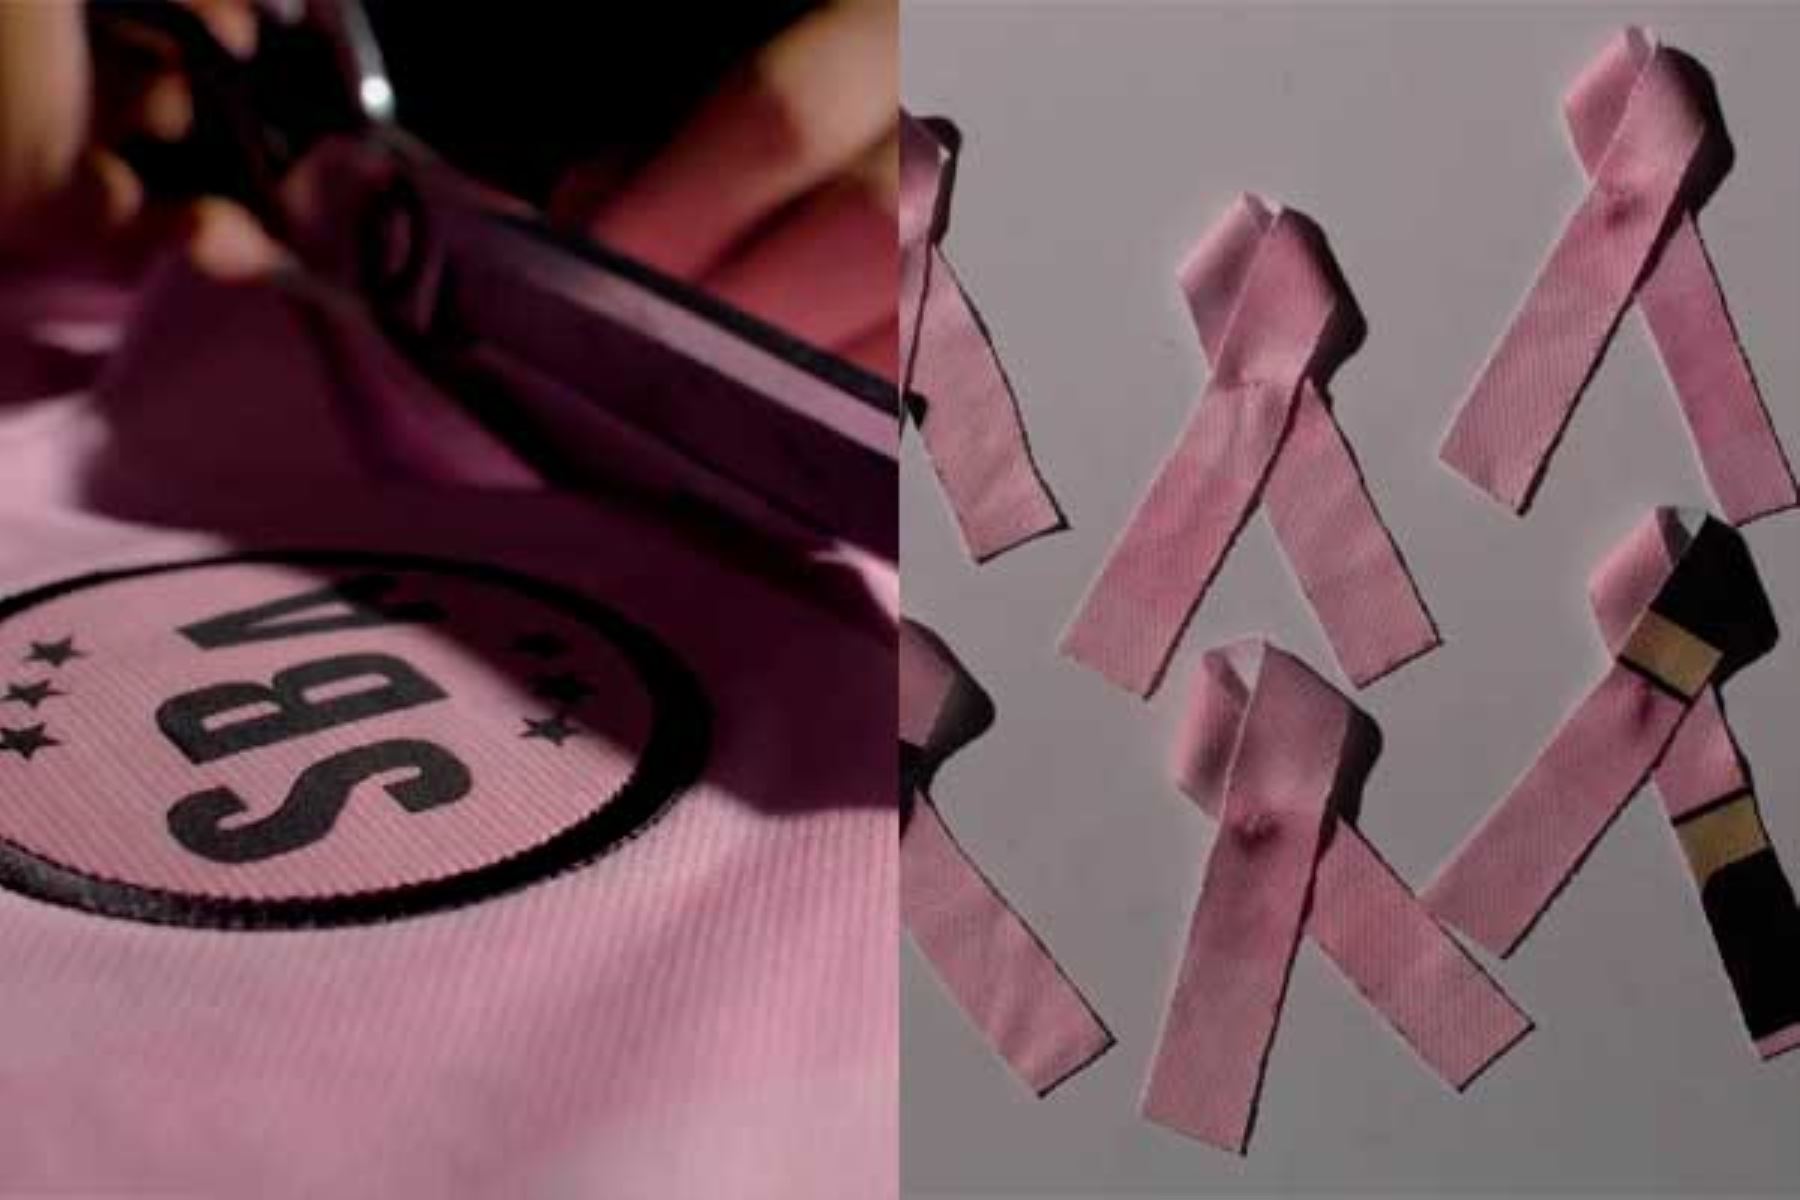 El club usará su uniforme alterno de color morado, pues, en lucha contra este tipo de cáncer, ha donado el sagrado rosado de sus camisetas para convertirlas en lazos rosa. Composición: ANDINA